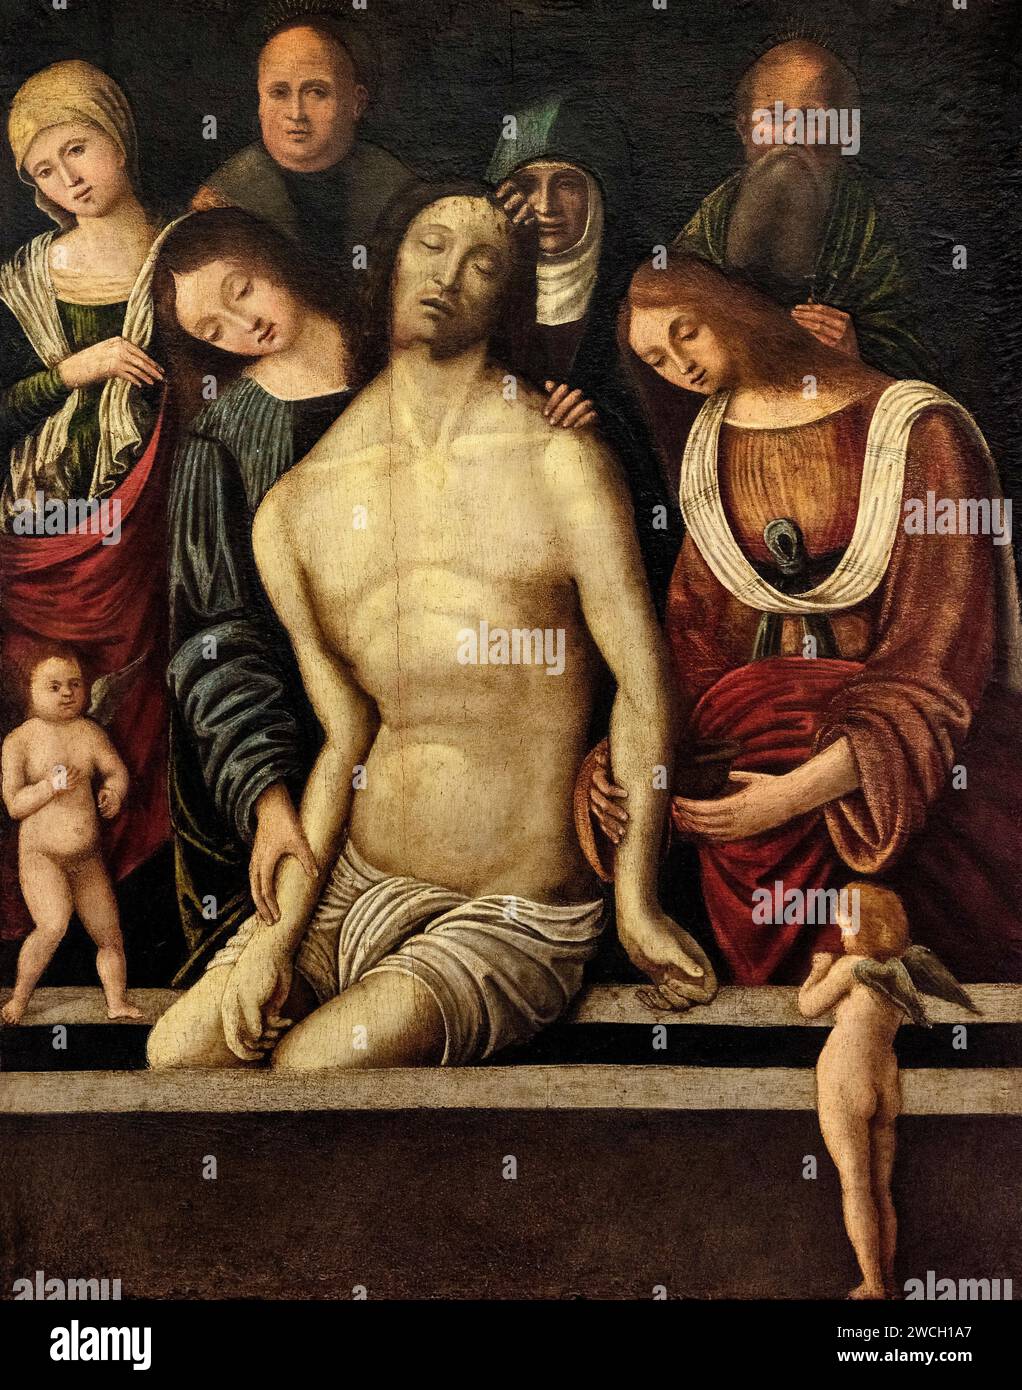 Deposizione di Gesù nel sepolcro con angeli  - tempera su tavola - Lorenzo Costa e bottega - primo decennio del XVI secolo  -  Pavia, Civica Pinacotec Stock Photo